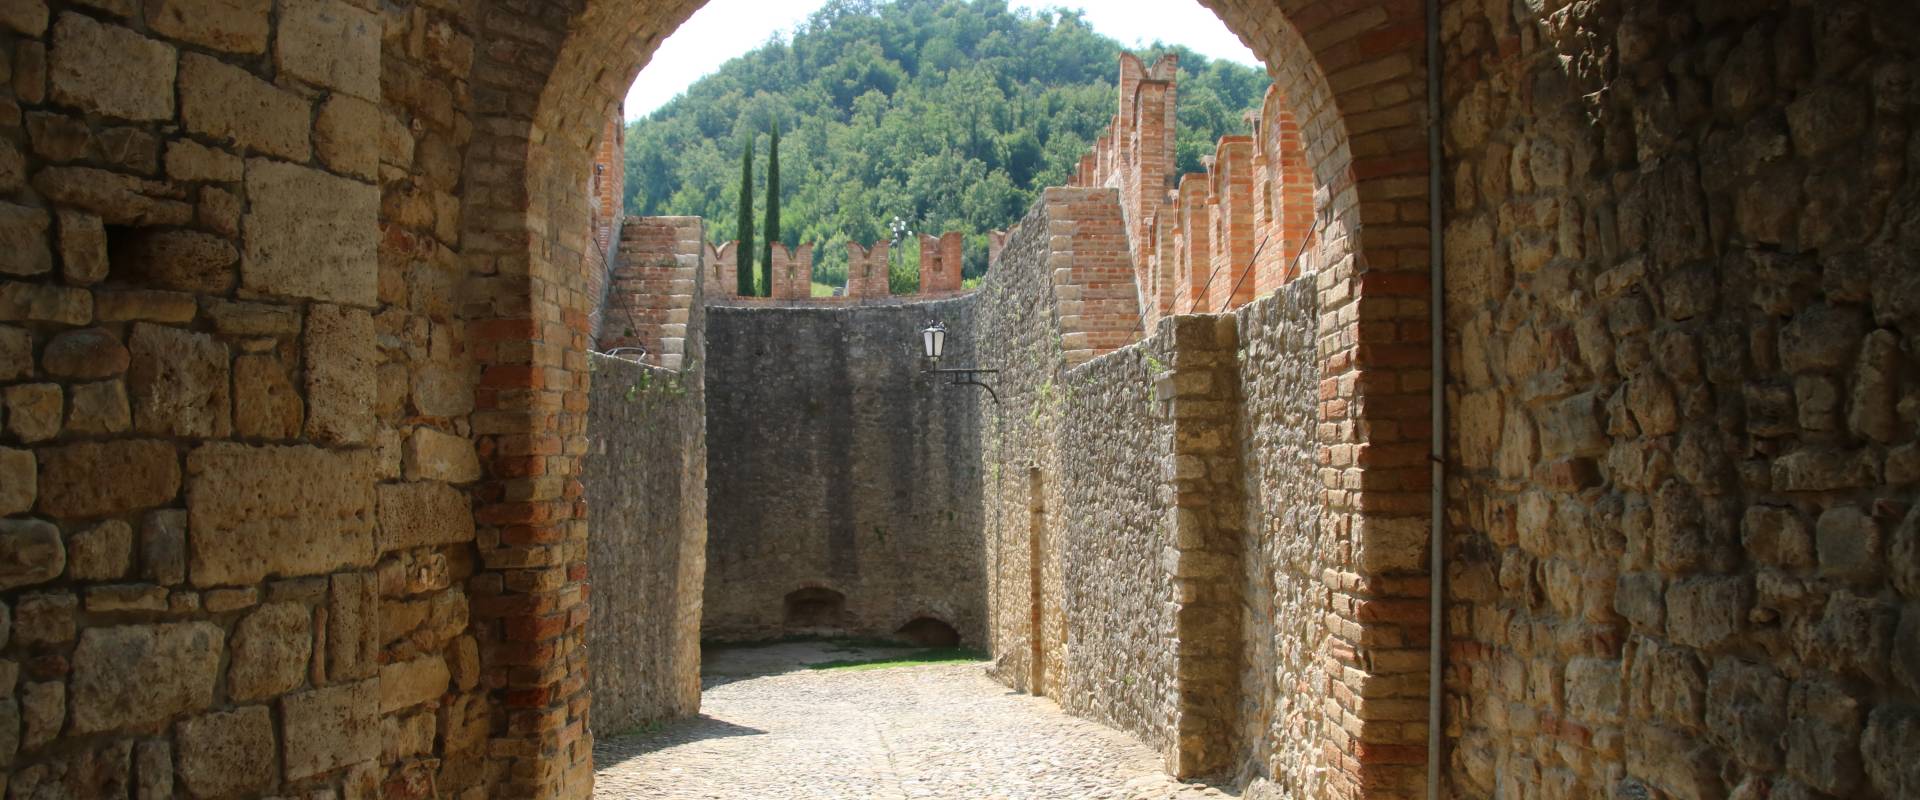 Castello di Vigoleno (Vernasca) 12 photo by Mongolo1984